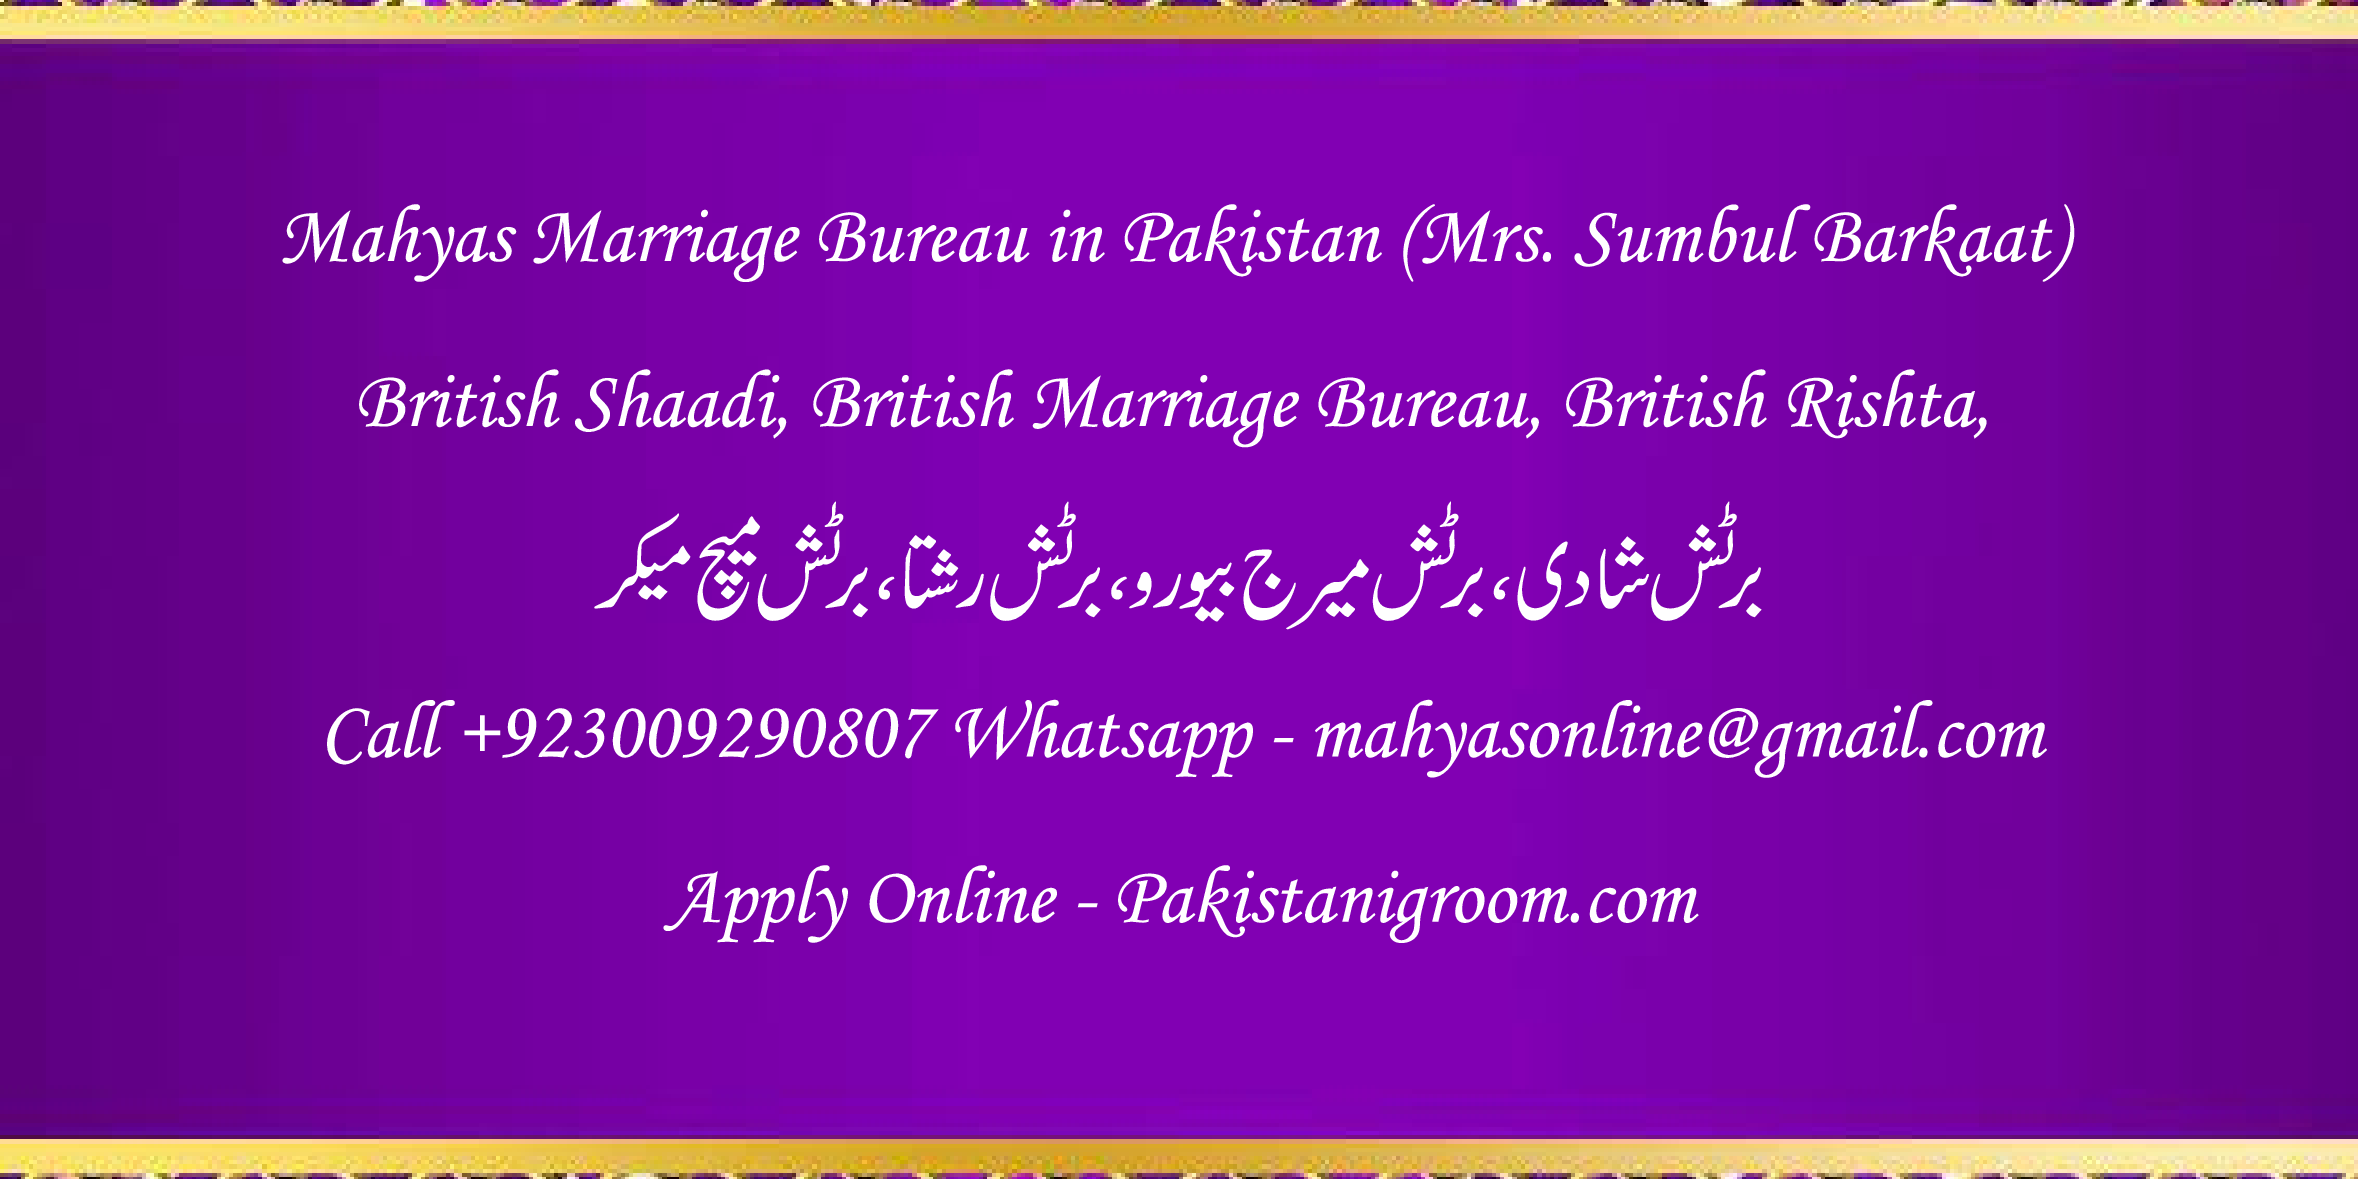 Mahyas-marriage-bureau-Karachi-Pakistan-for-Shia-Sunni-Remarriage-Divorce-Widow-Second-marriage-Punjabi-Pashto-Urdu-16.png